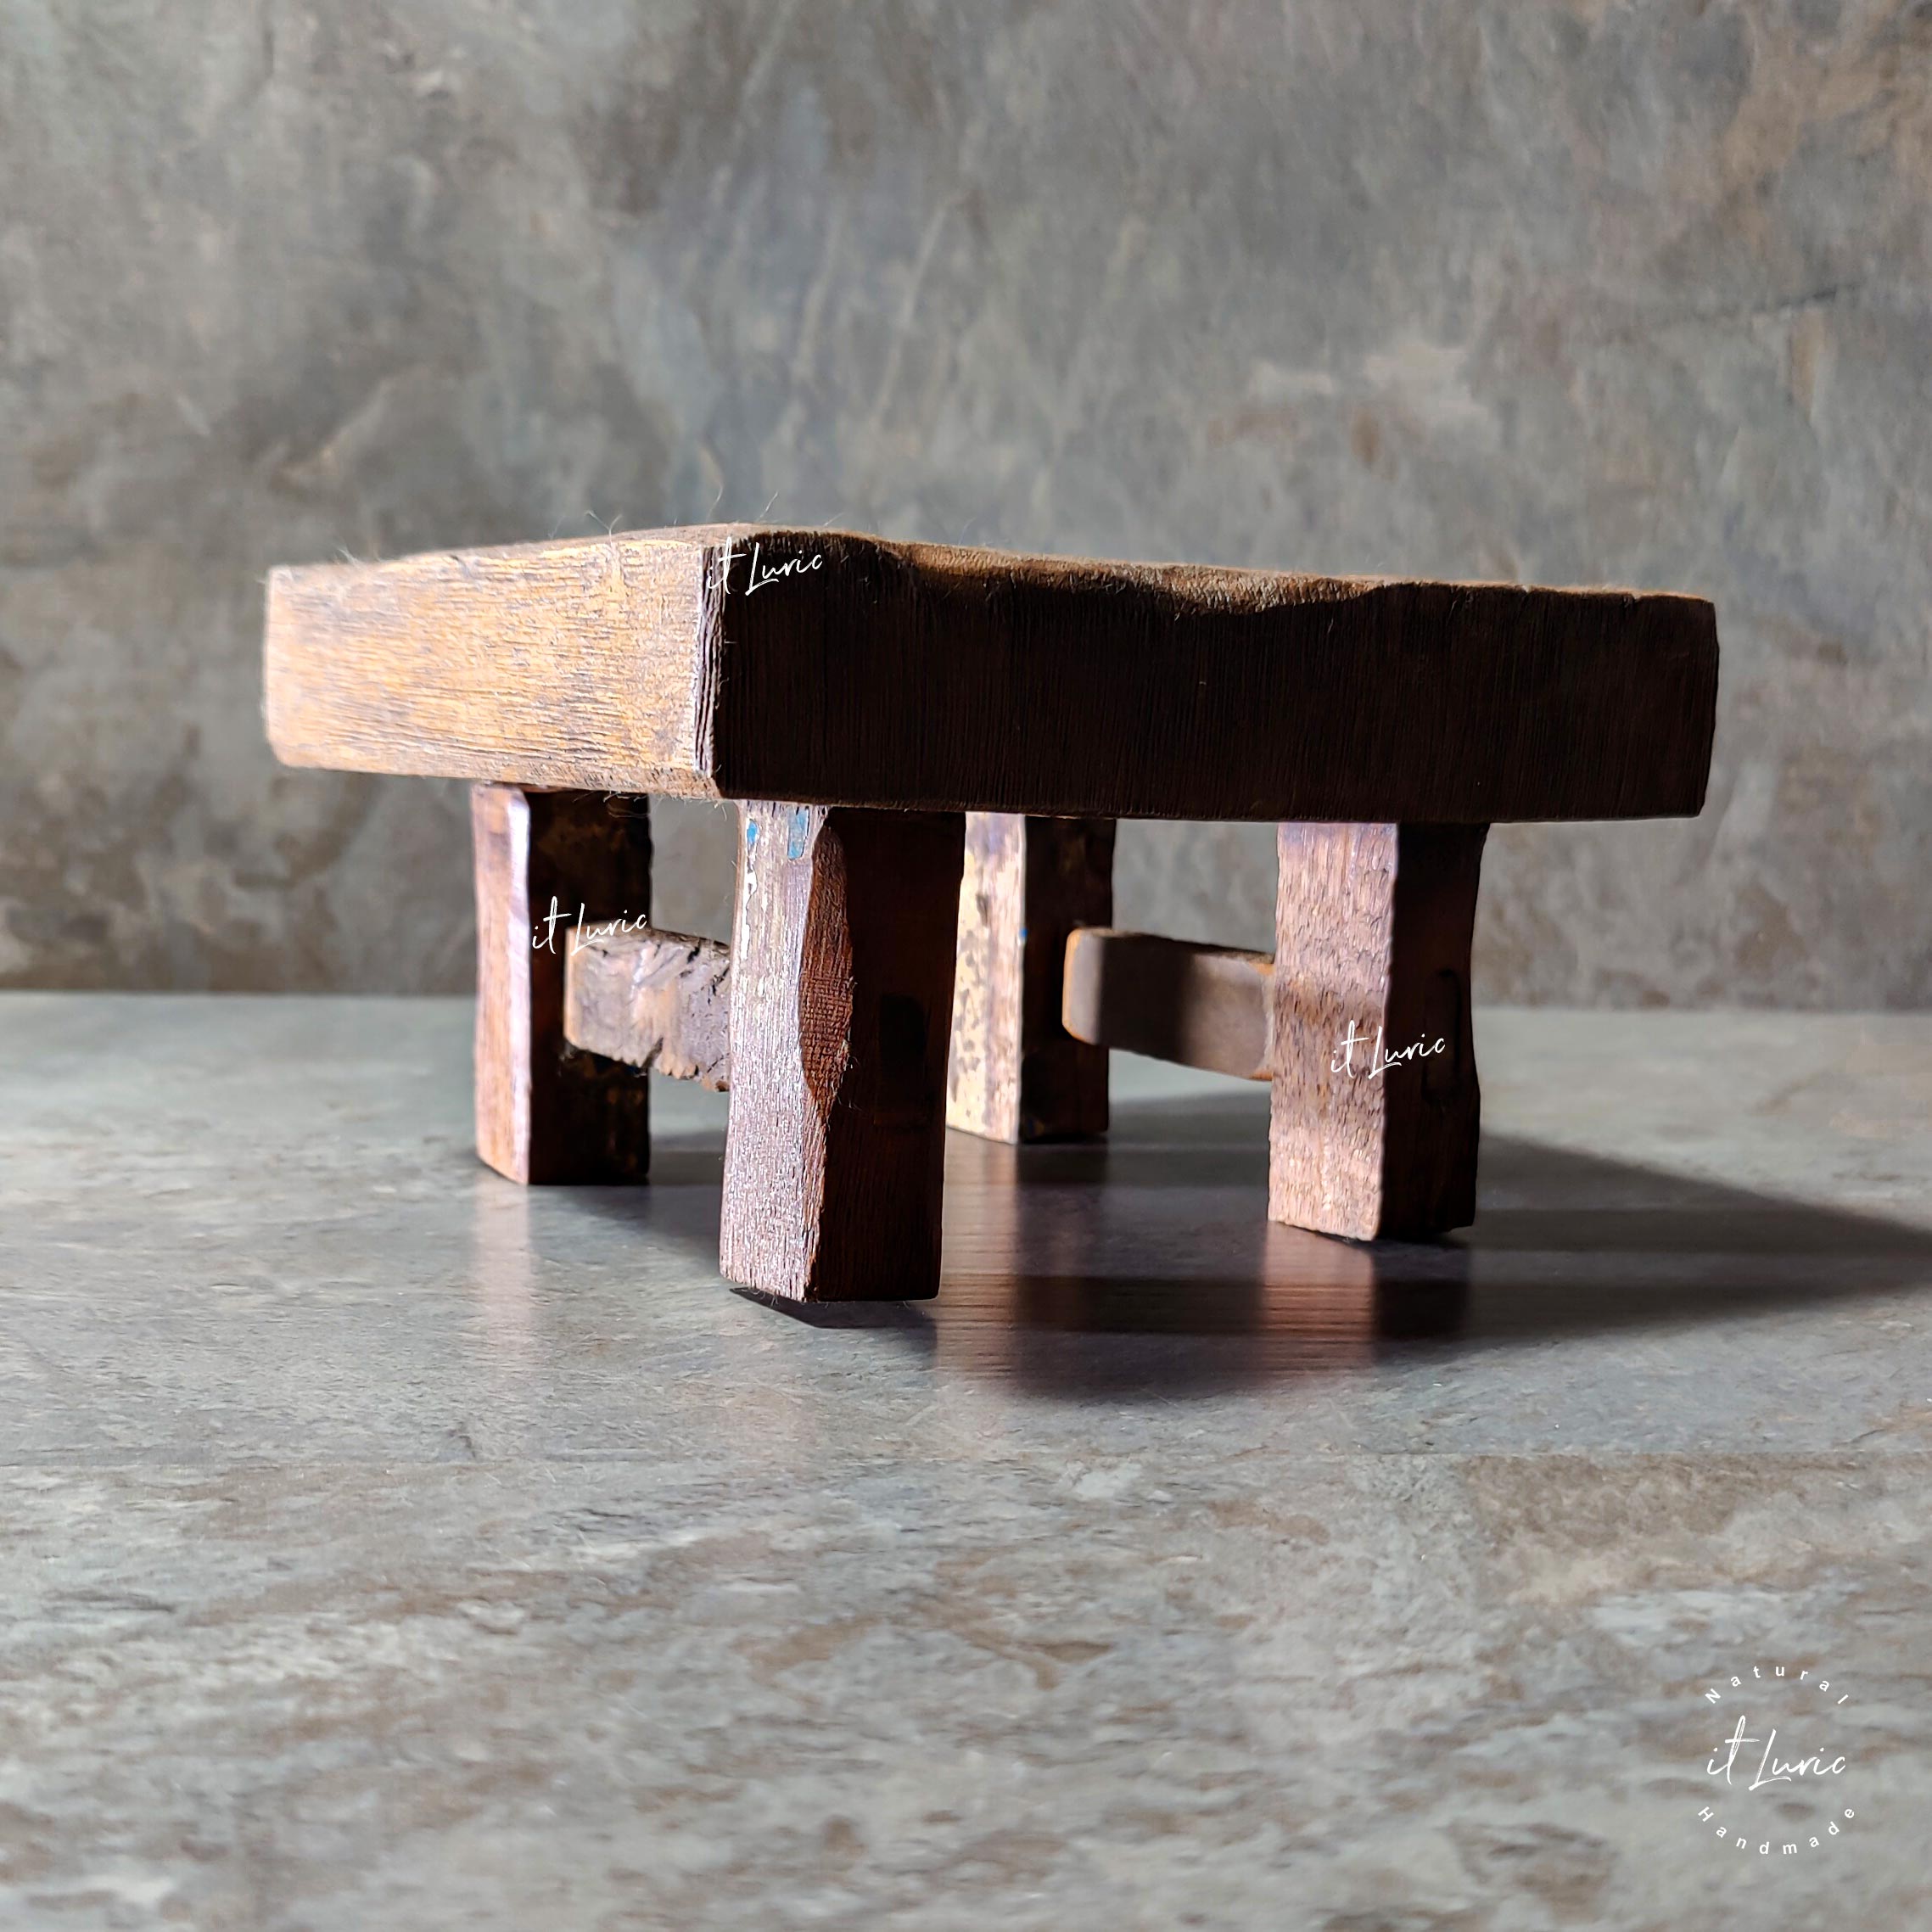 Foto do Mini-Banqueta-Madeira-Demolicao-18x18x11cm, é uma banquinho quadrado com pés baixos para ser usado na decoração como uma base elevada para outros objetos